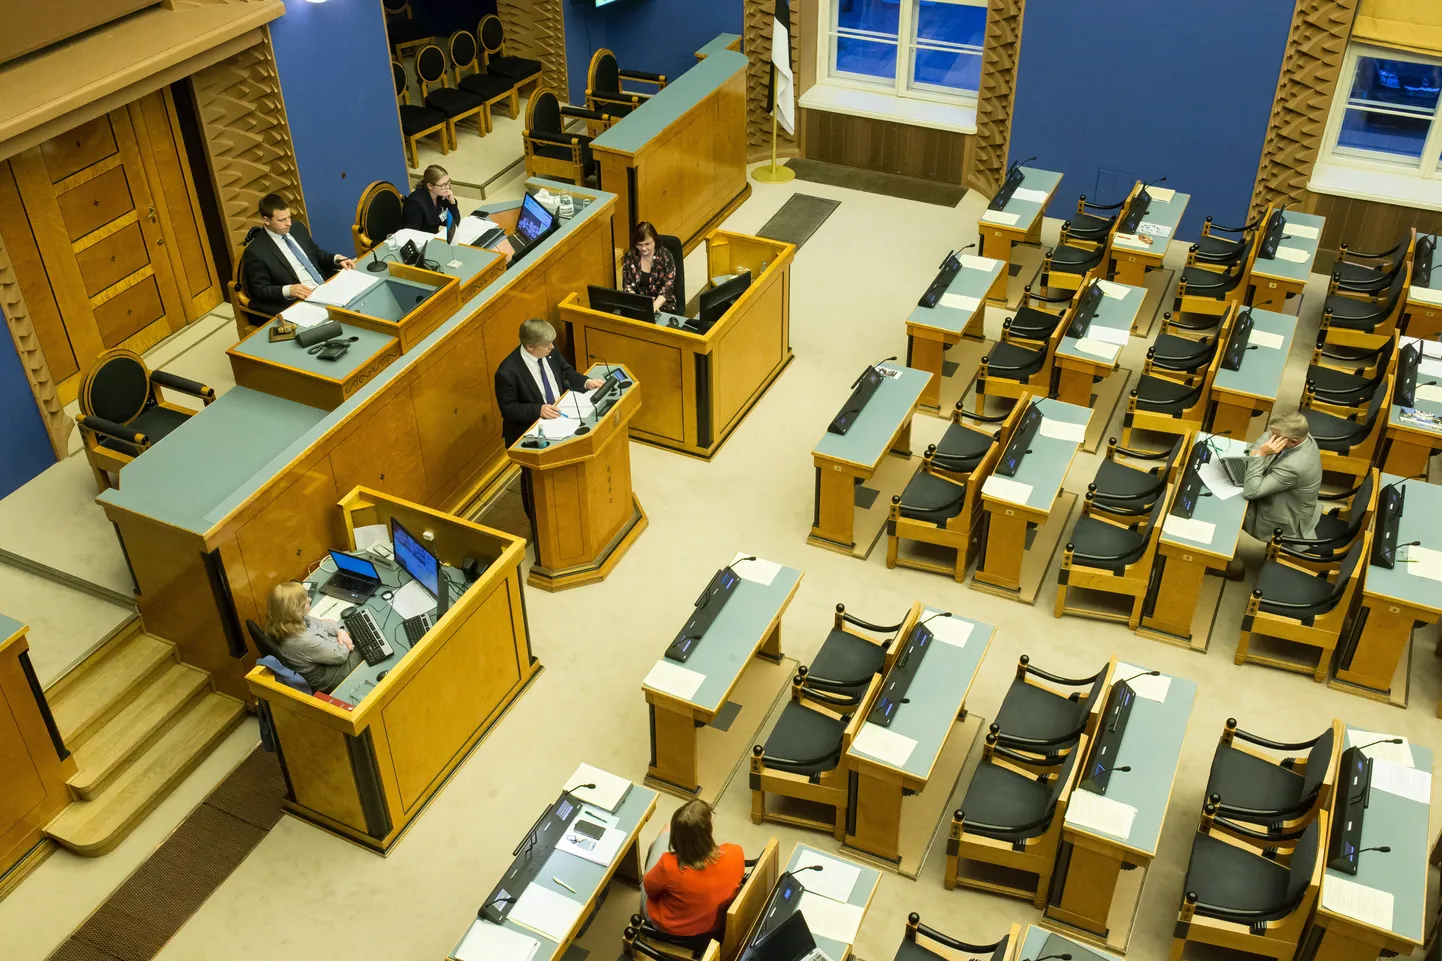 Taotluse hinnata haldusreformi seaduse vastavust põhiseadusele esitas Riigikohtule tänavu juulis Kõpu vald. Pildil riigikogu istungisaal.